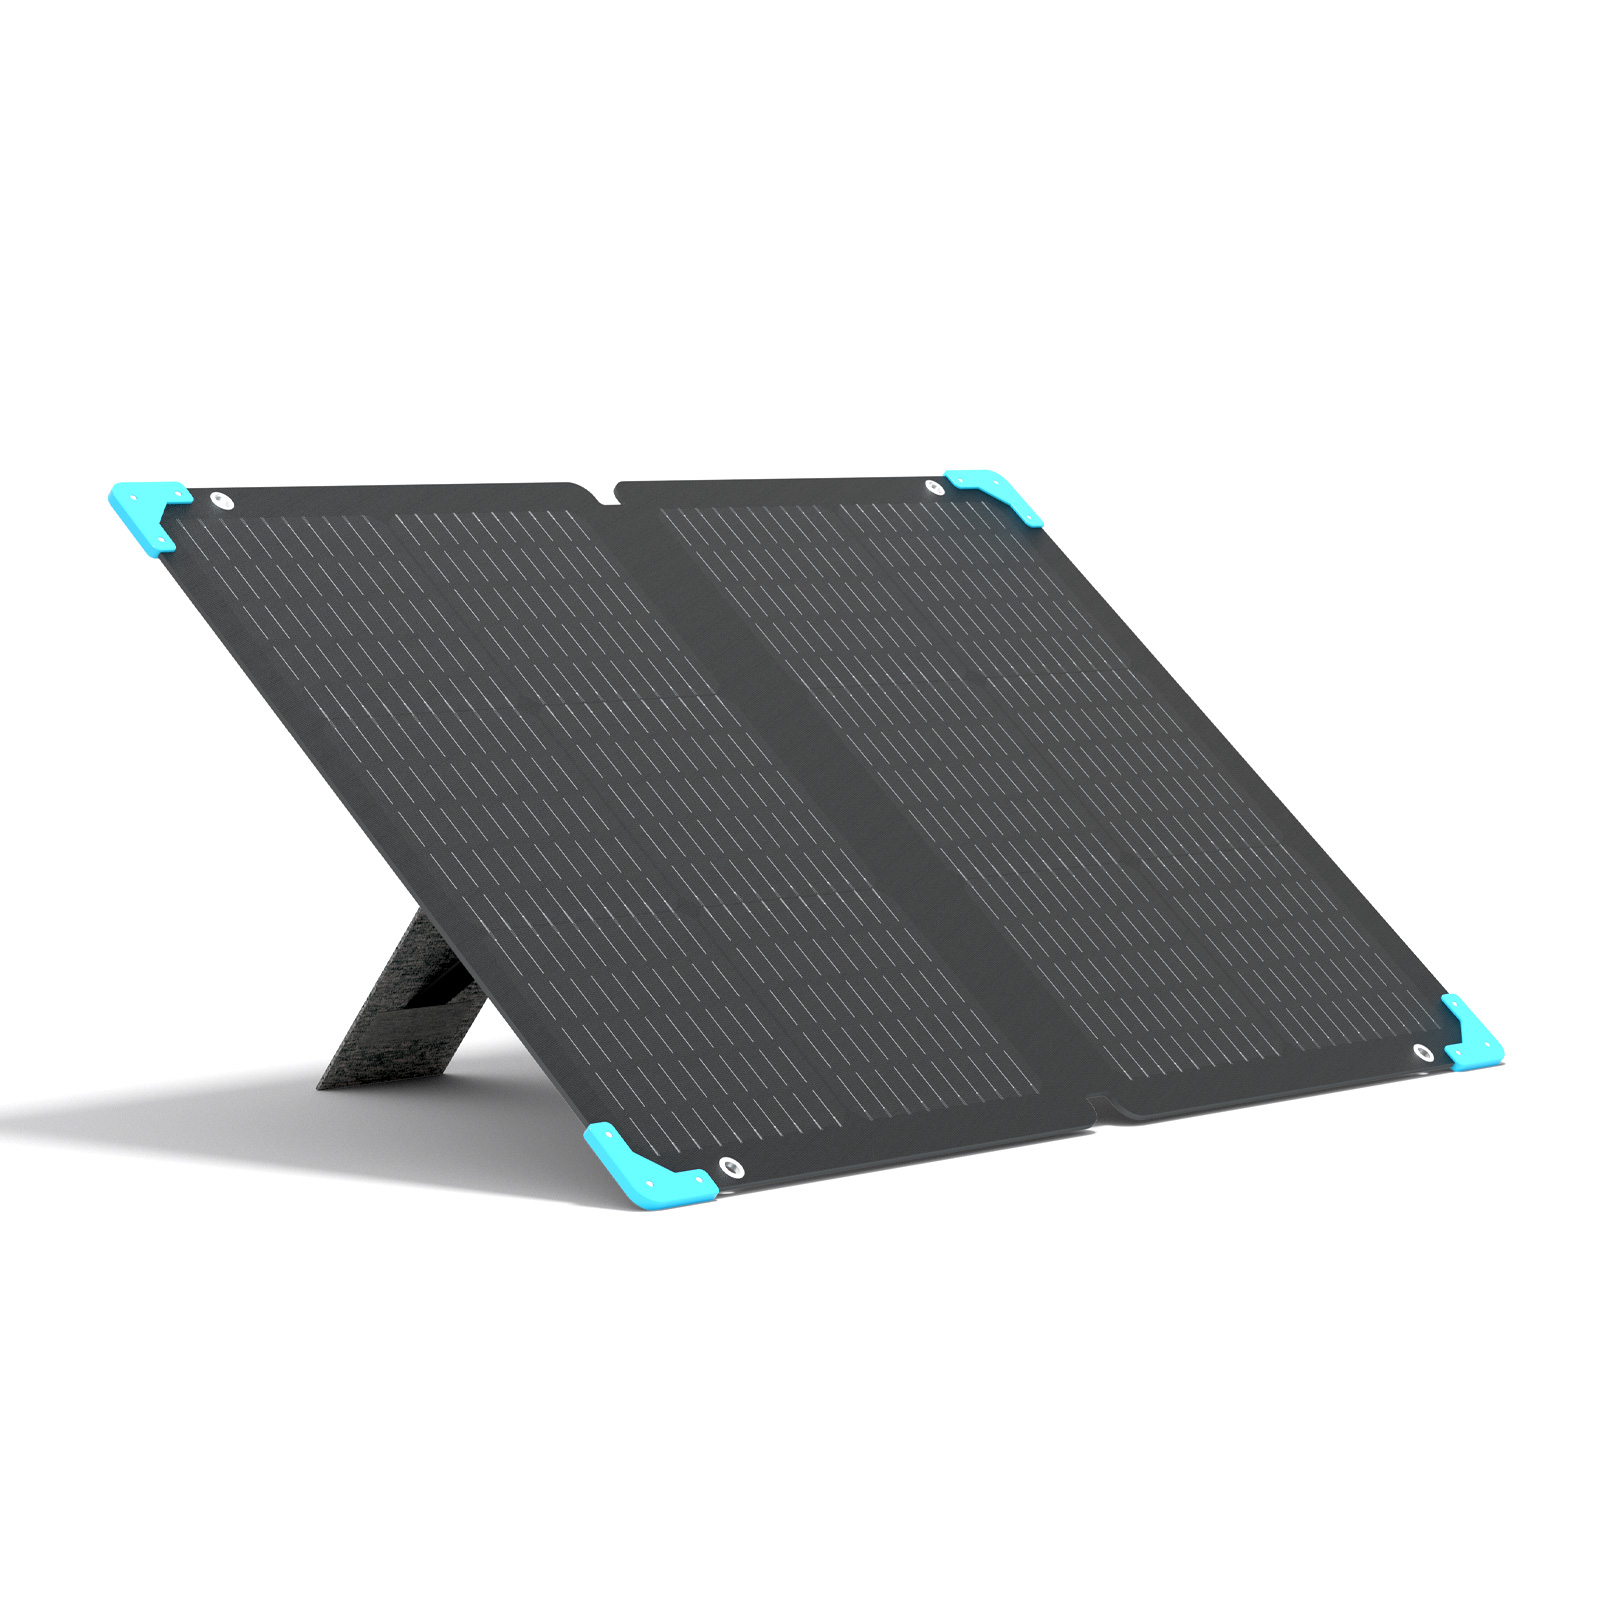 E.FLEX 80 portable solar panel